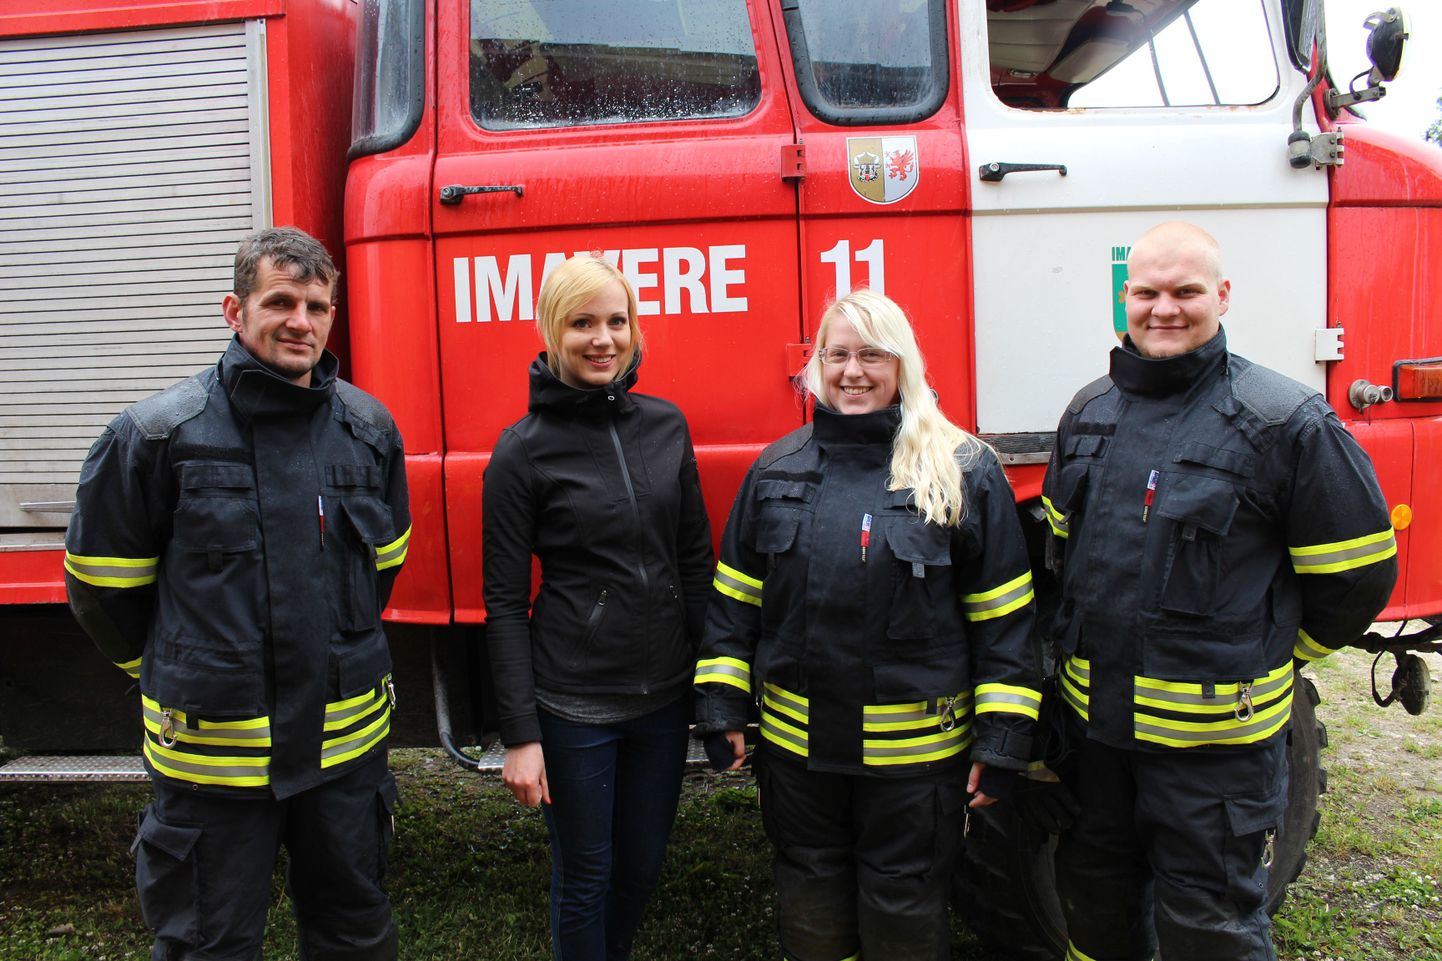 Imavere vabatahtlikud päästjad Rene Tamm (vasakult), Maarja Okas, Triin Tõnisson ja Timo Reinpõld.